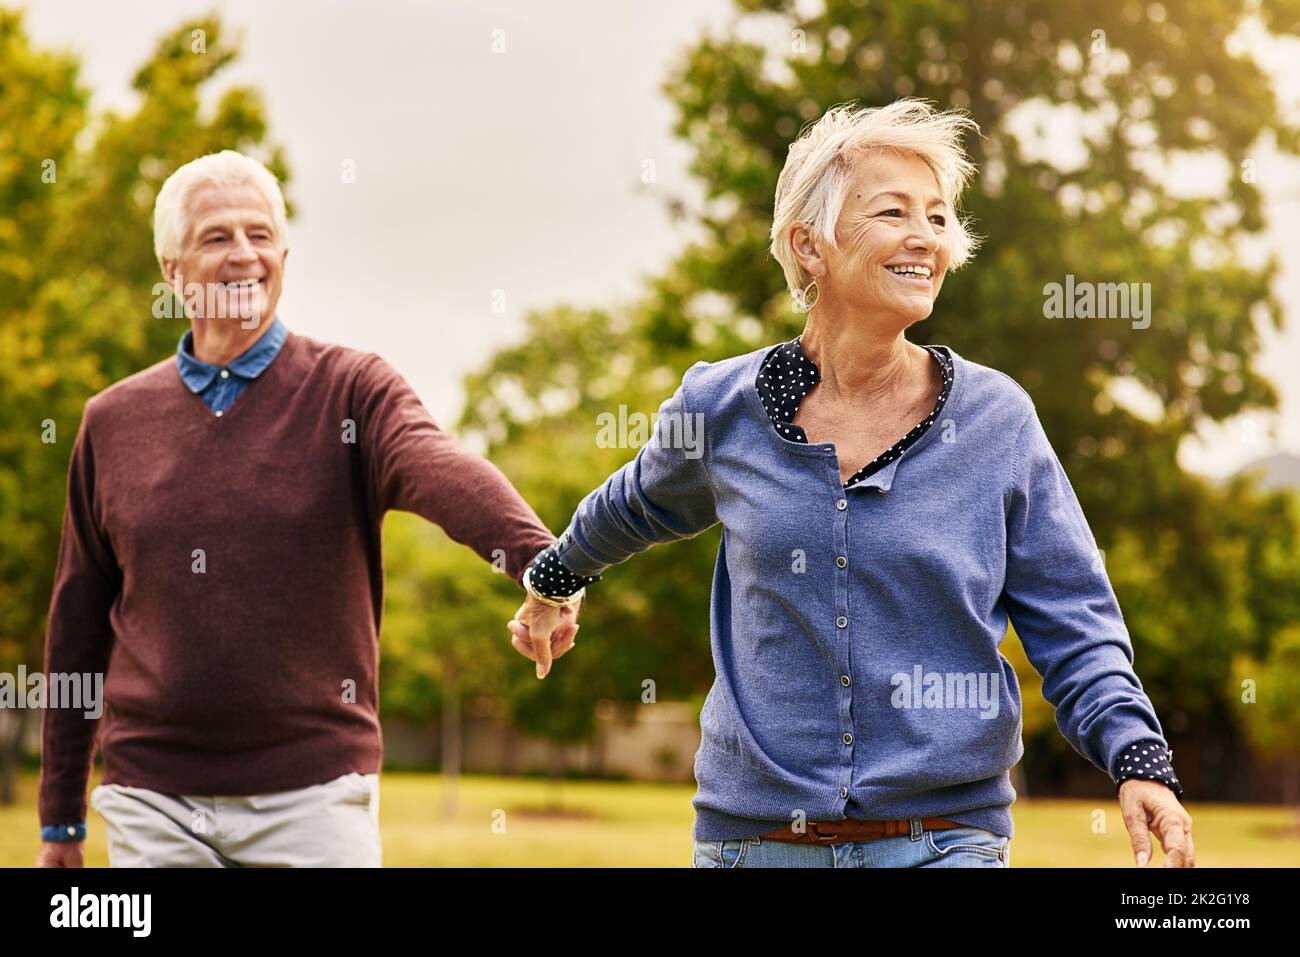 Liebe hält eine Ehe am Leben. Aufnahme eines glücklichen älteren Paares, das einen Spaziergang im Park macht. Stockfoto